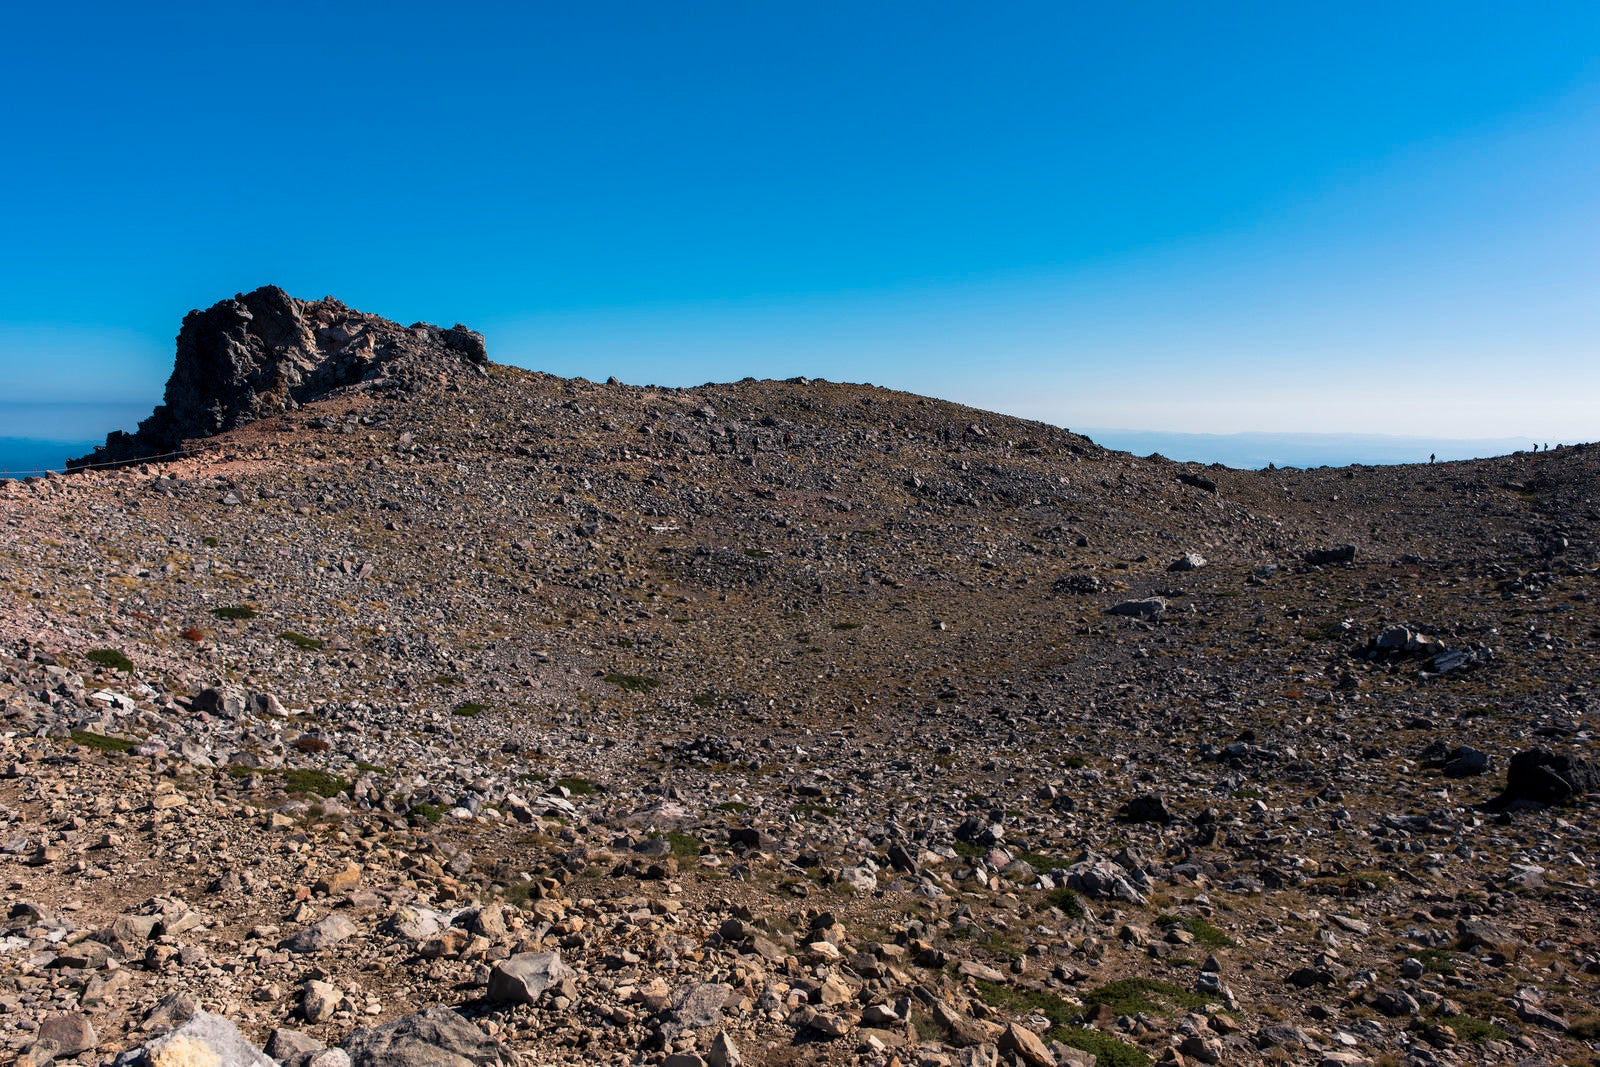 「別の惑星の地面のような那須岳の山頂」の写真